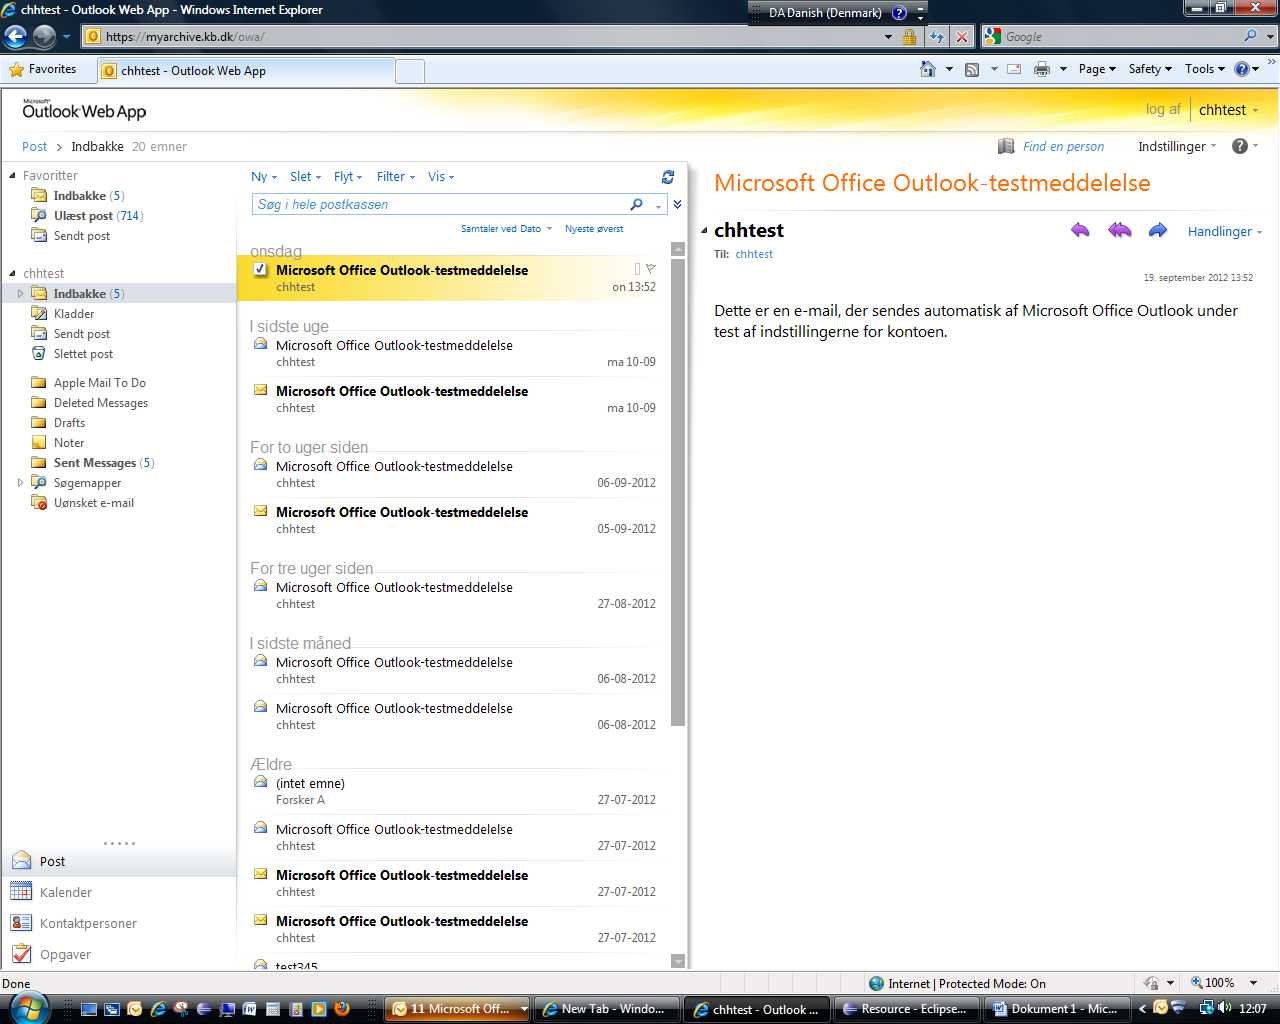 Denne Outlook Web App giver de samme muligheder for at arbejde med deponerede e-mails som hvis man benyttede sin egen e-mail klient.